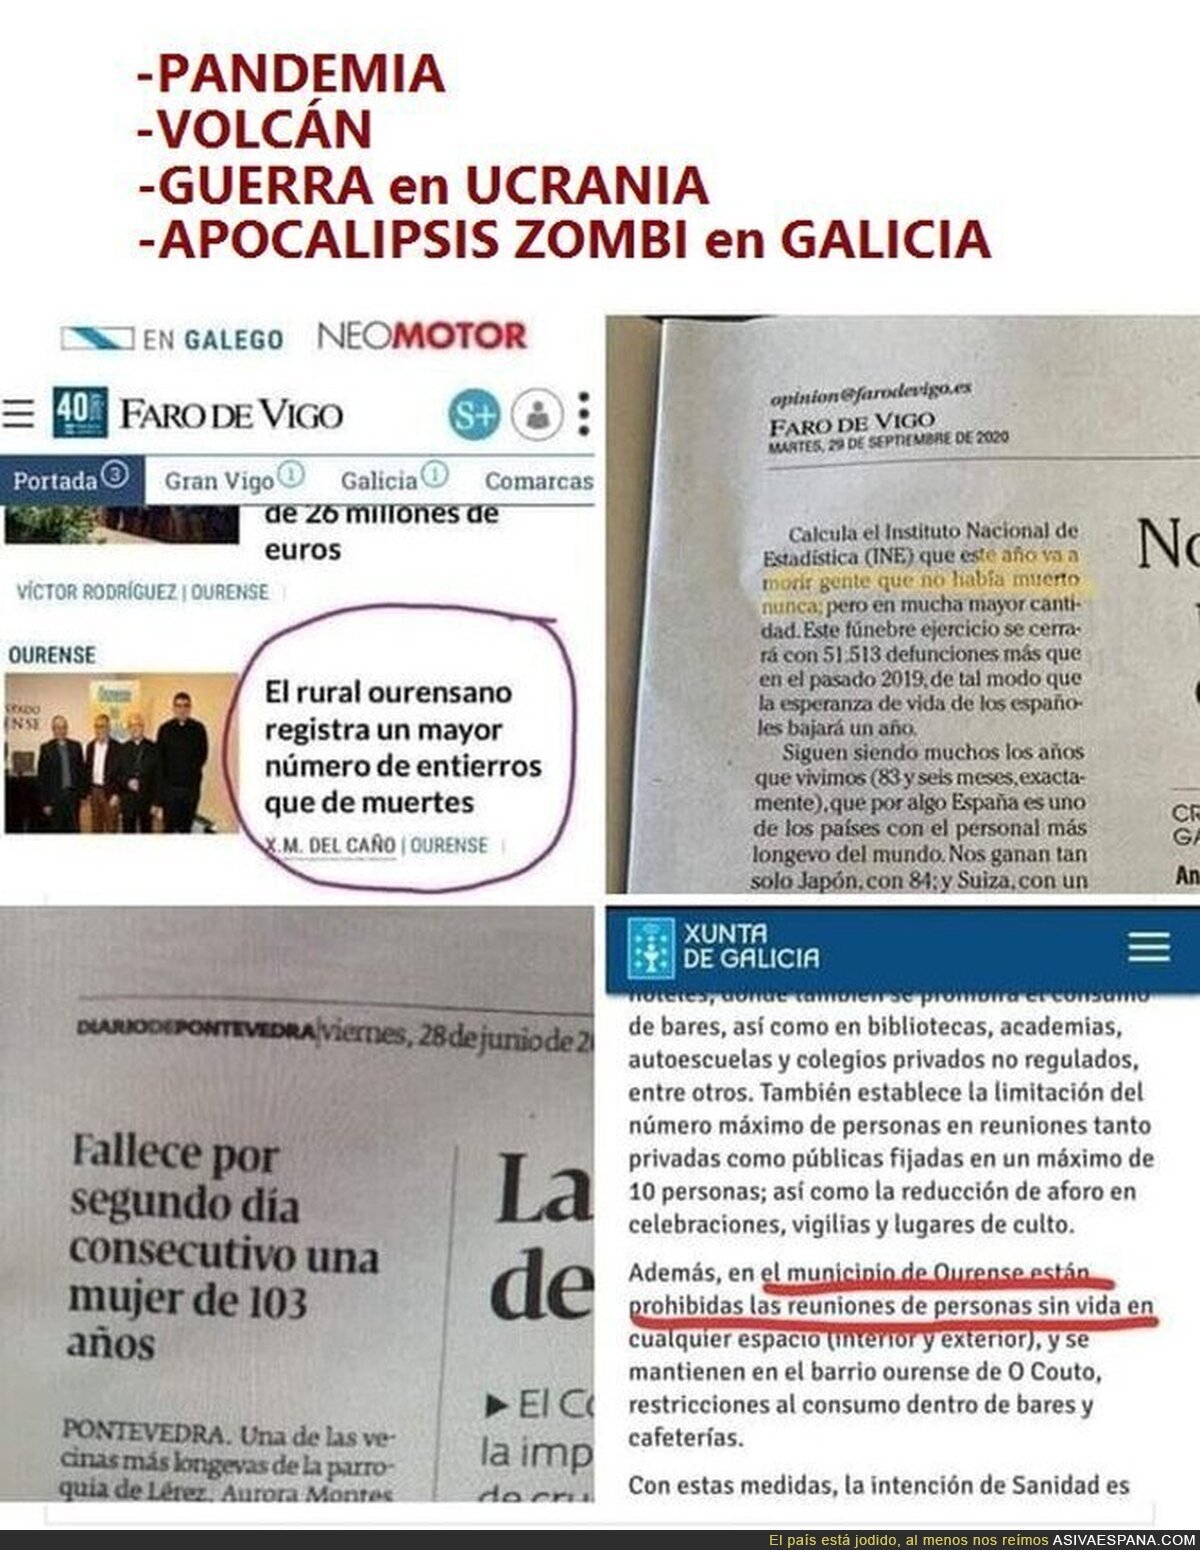 El Apocalipsis Zombi está llegando, y comienza en Galicia